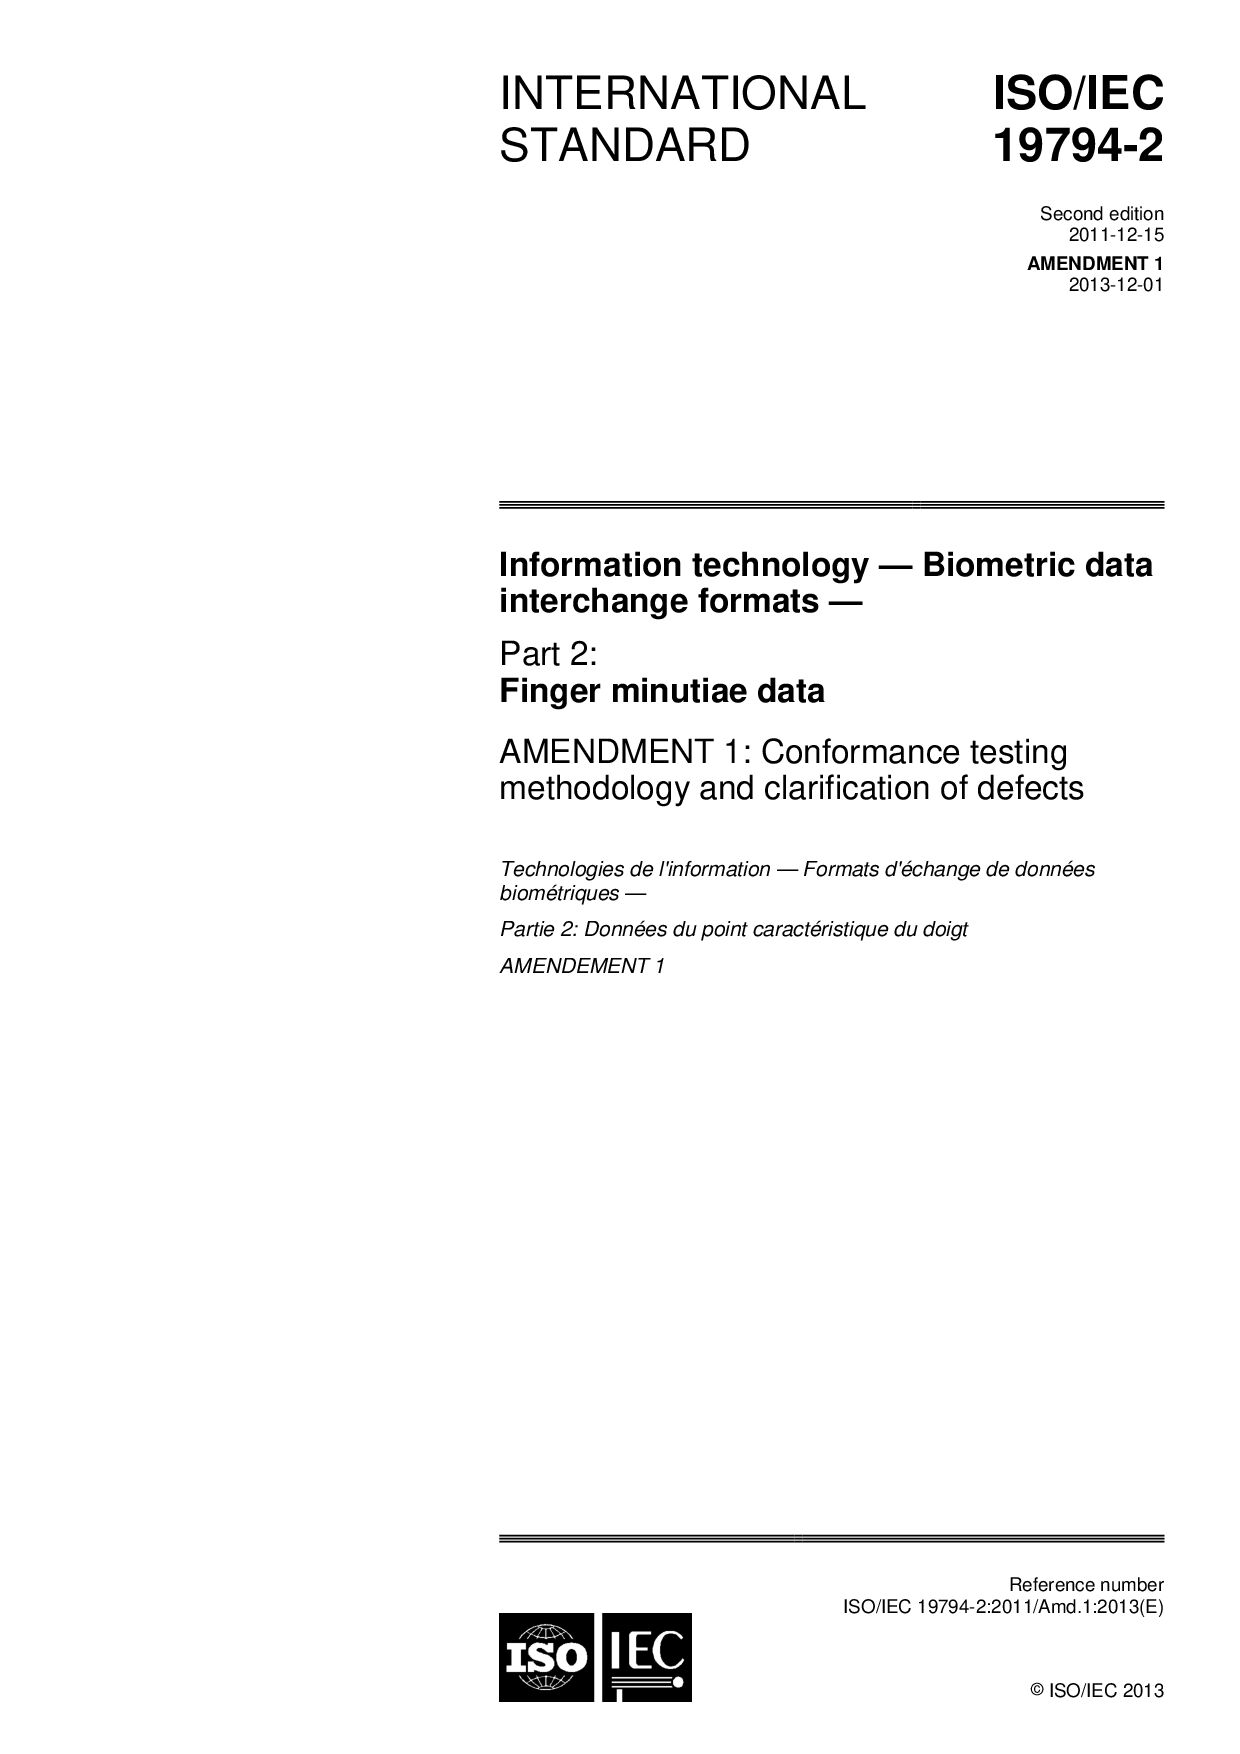 ISO/IEC 19794-2:2011/Amd 1:2013封面图